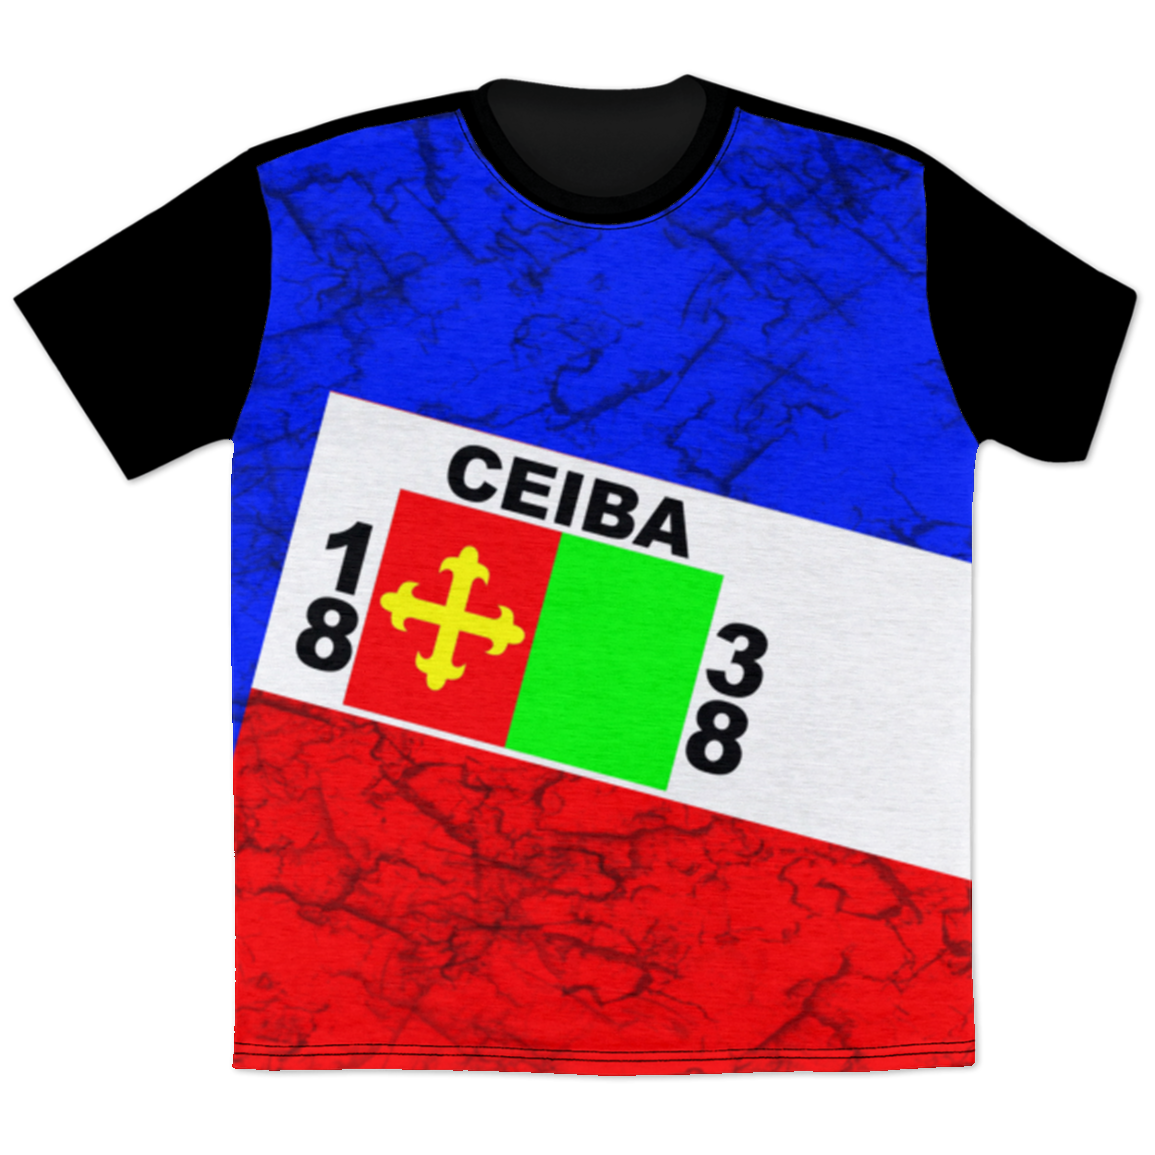 Ceiba T-Shirt - Puerto Rican Pride